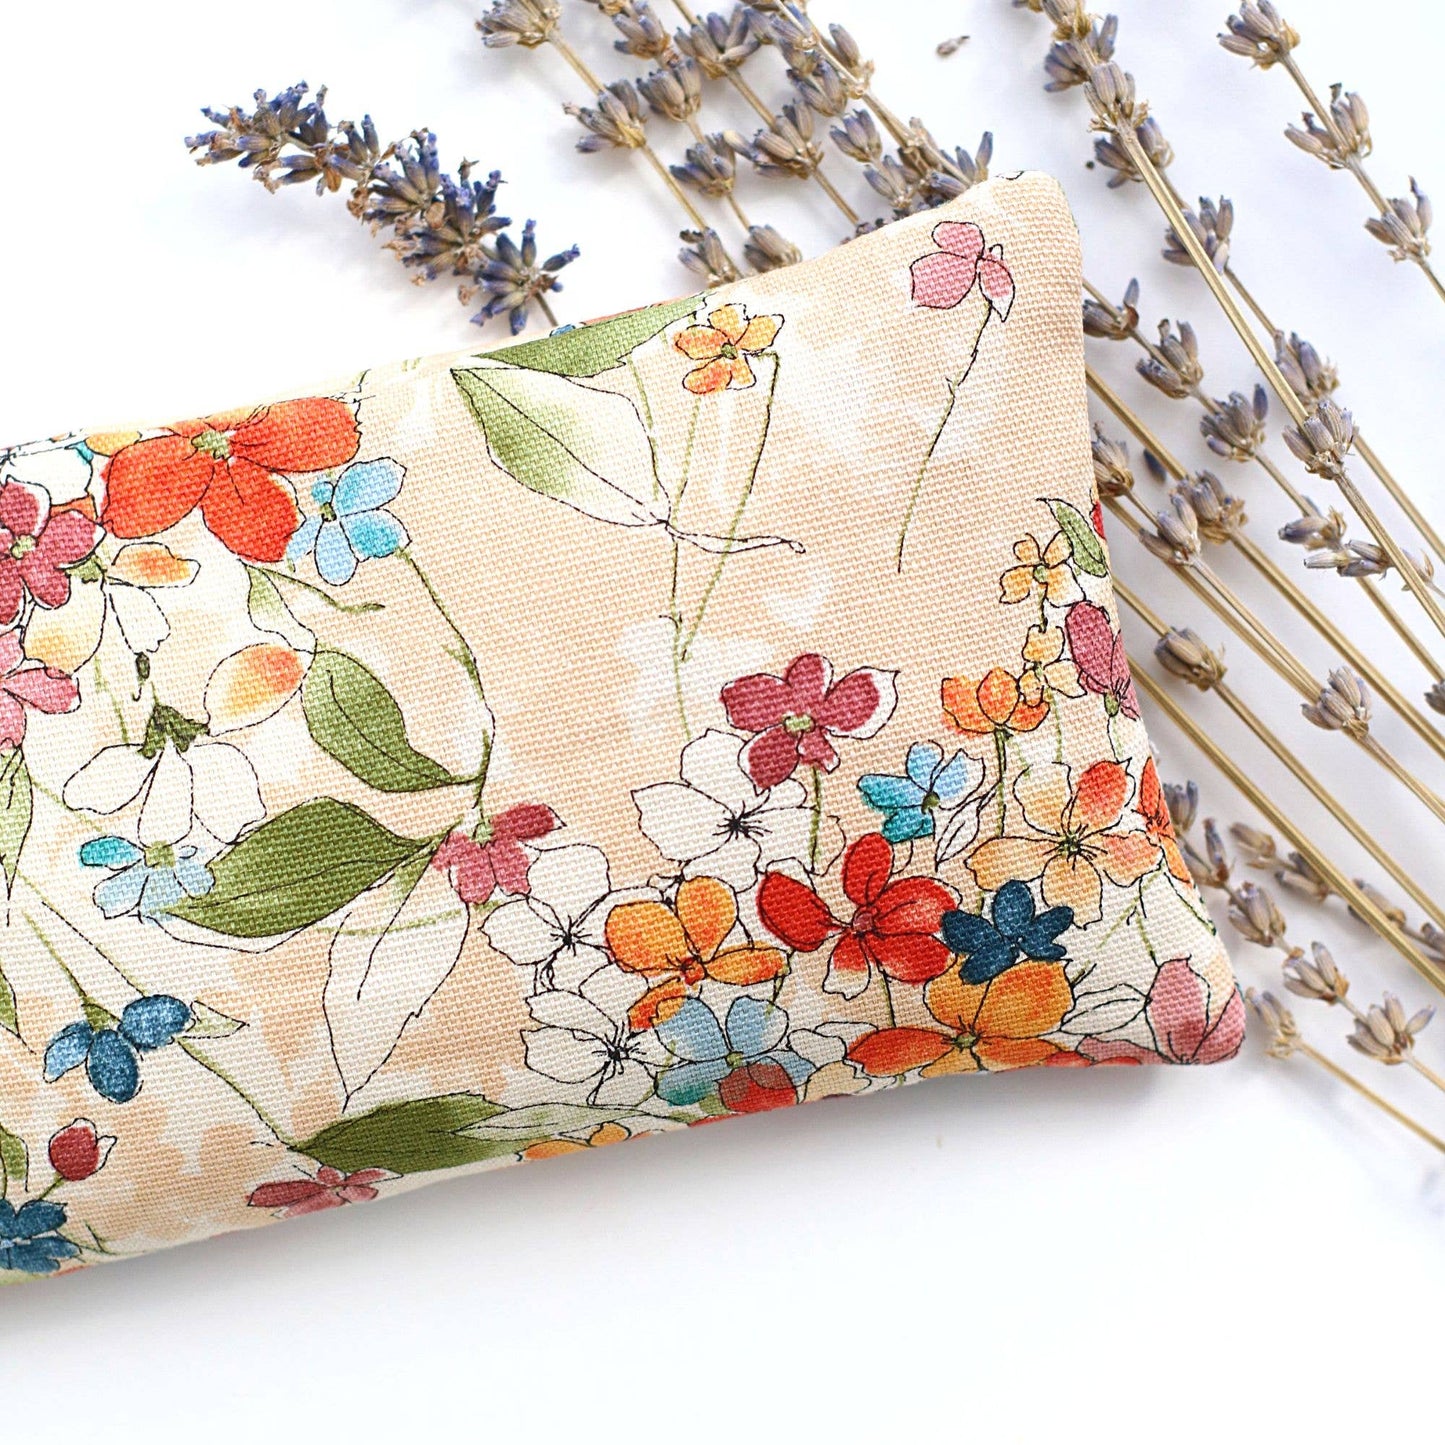 Lavender Eye Pillow - Floral Field